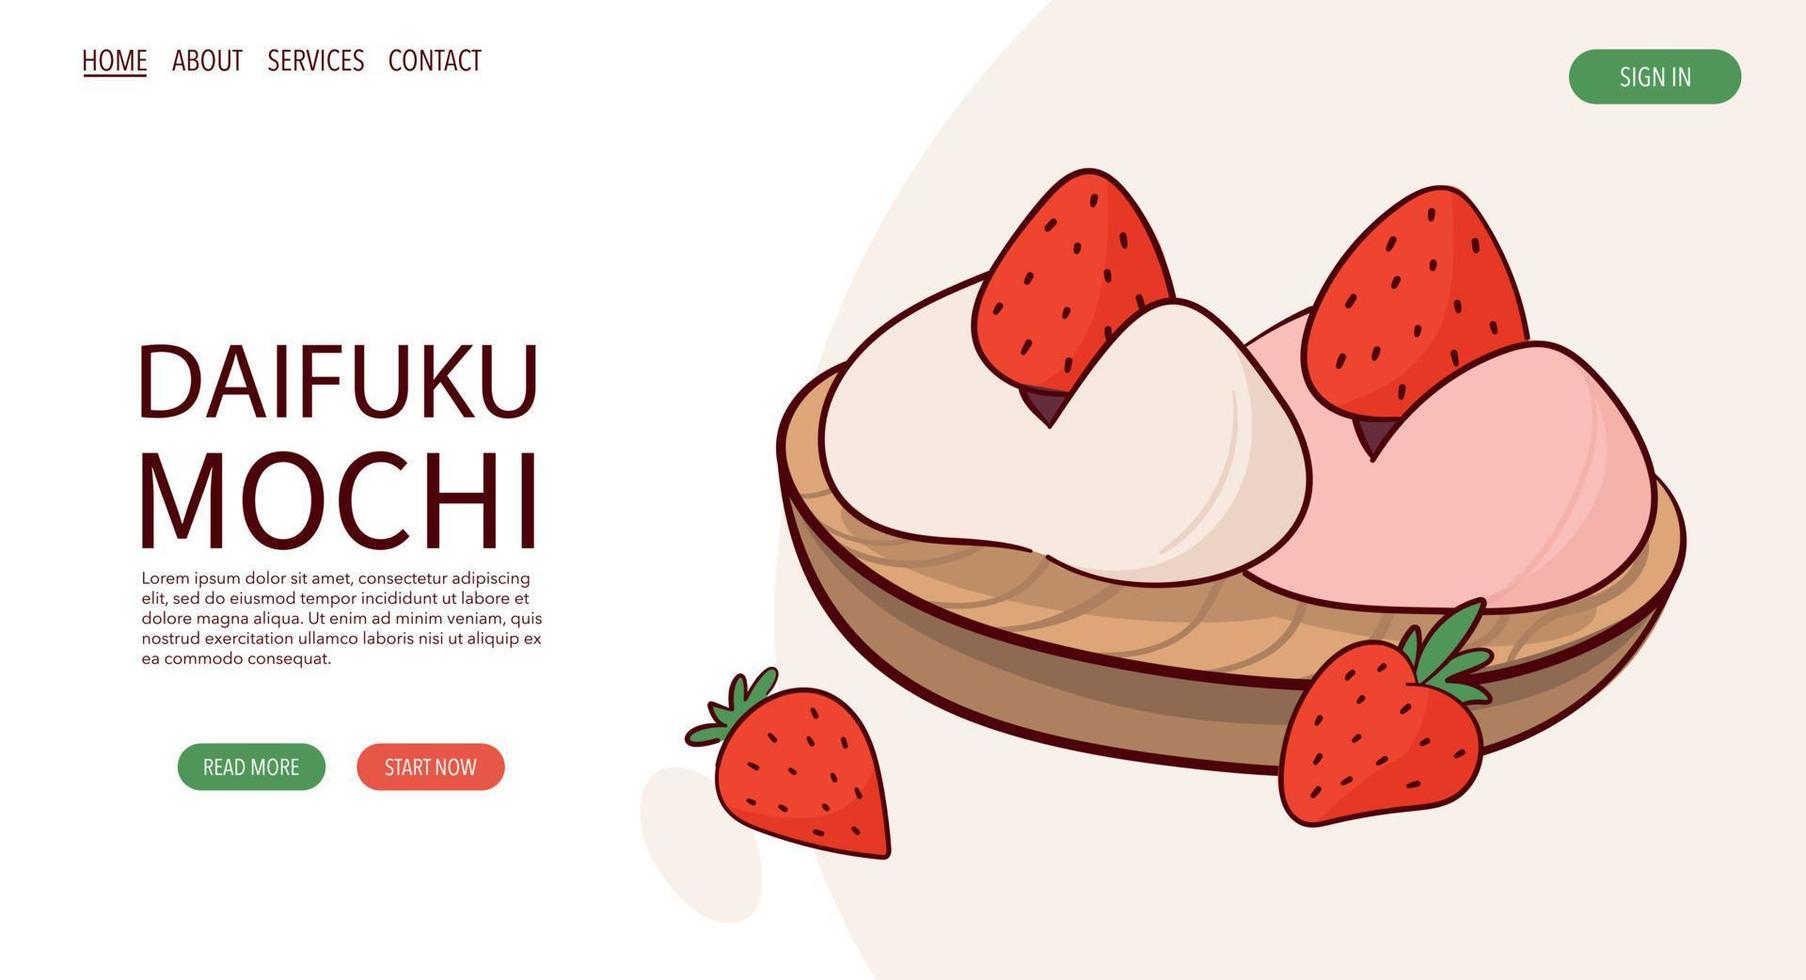 webseite zeichnen japanische tradition süße mochi daifuku vektorillustration. japanisches asiatisches traditionelles essen, kochen, menükonzept. Banner, Website, Werbung im Doodle-Cartoon-Stil. vektor